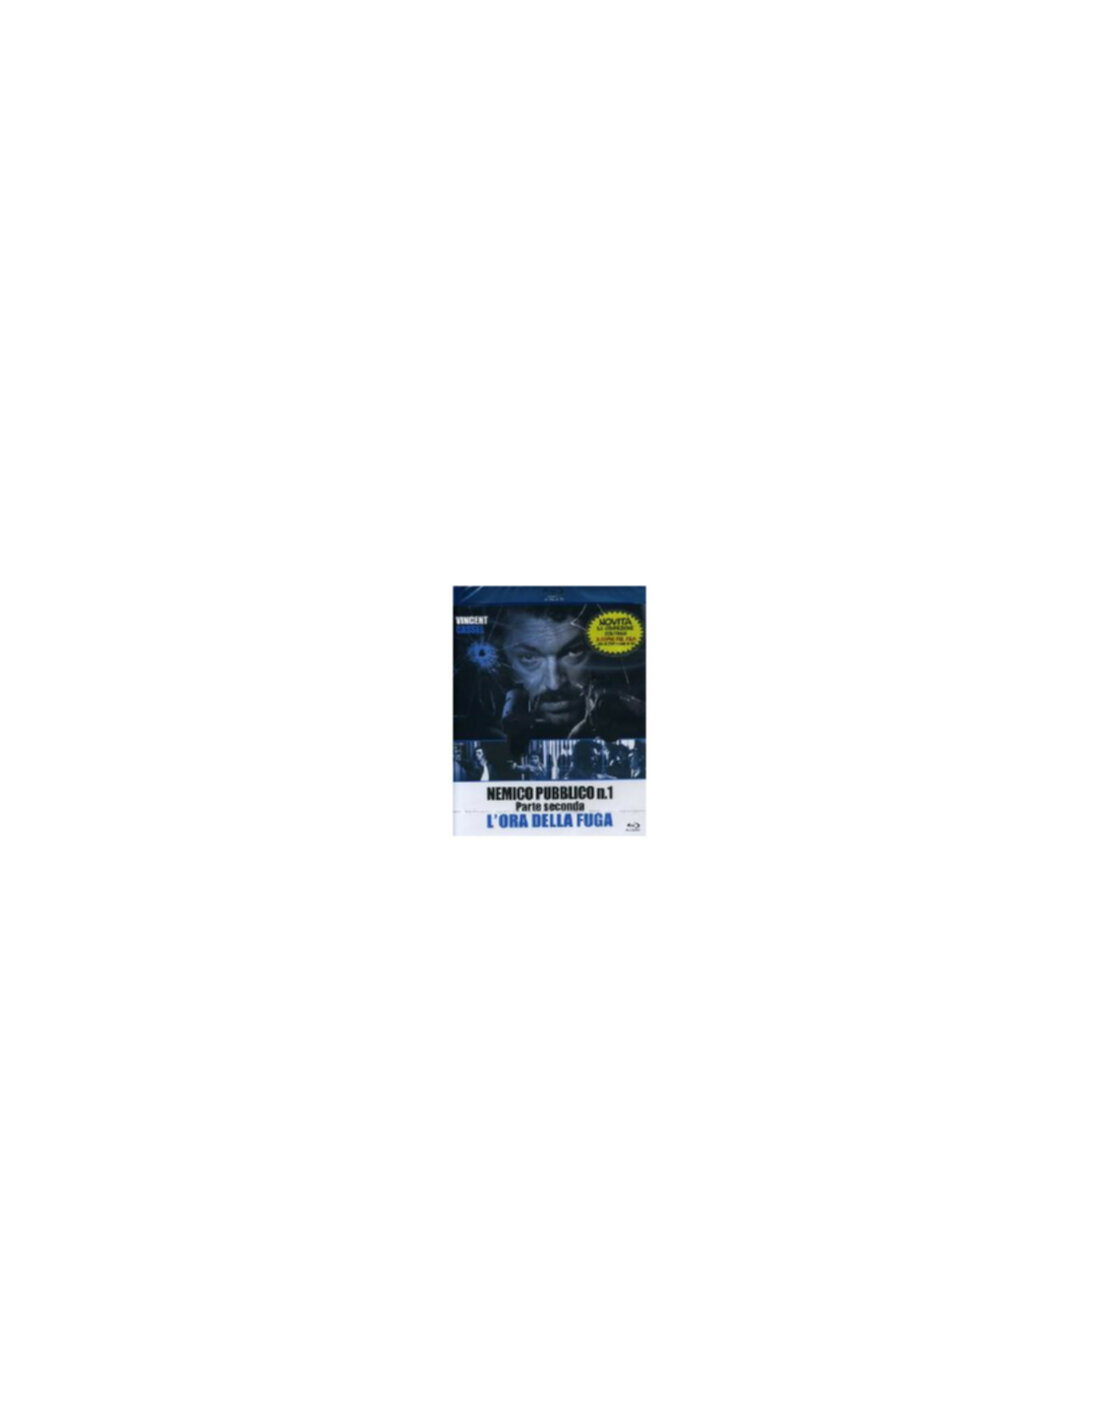 Nemico Pubblico N 1 Parte 2 Lora Della Fuga Blu Ray Solo 599